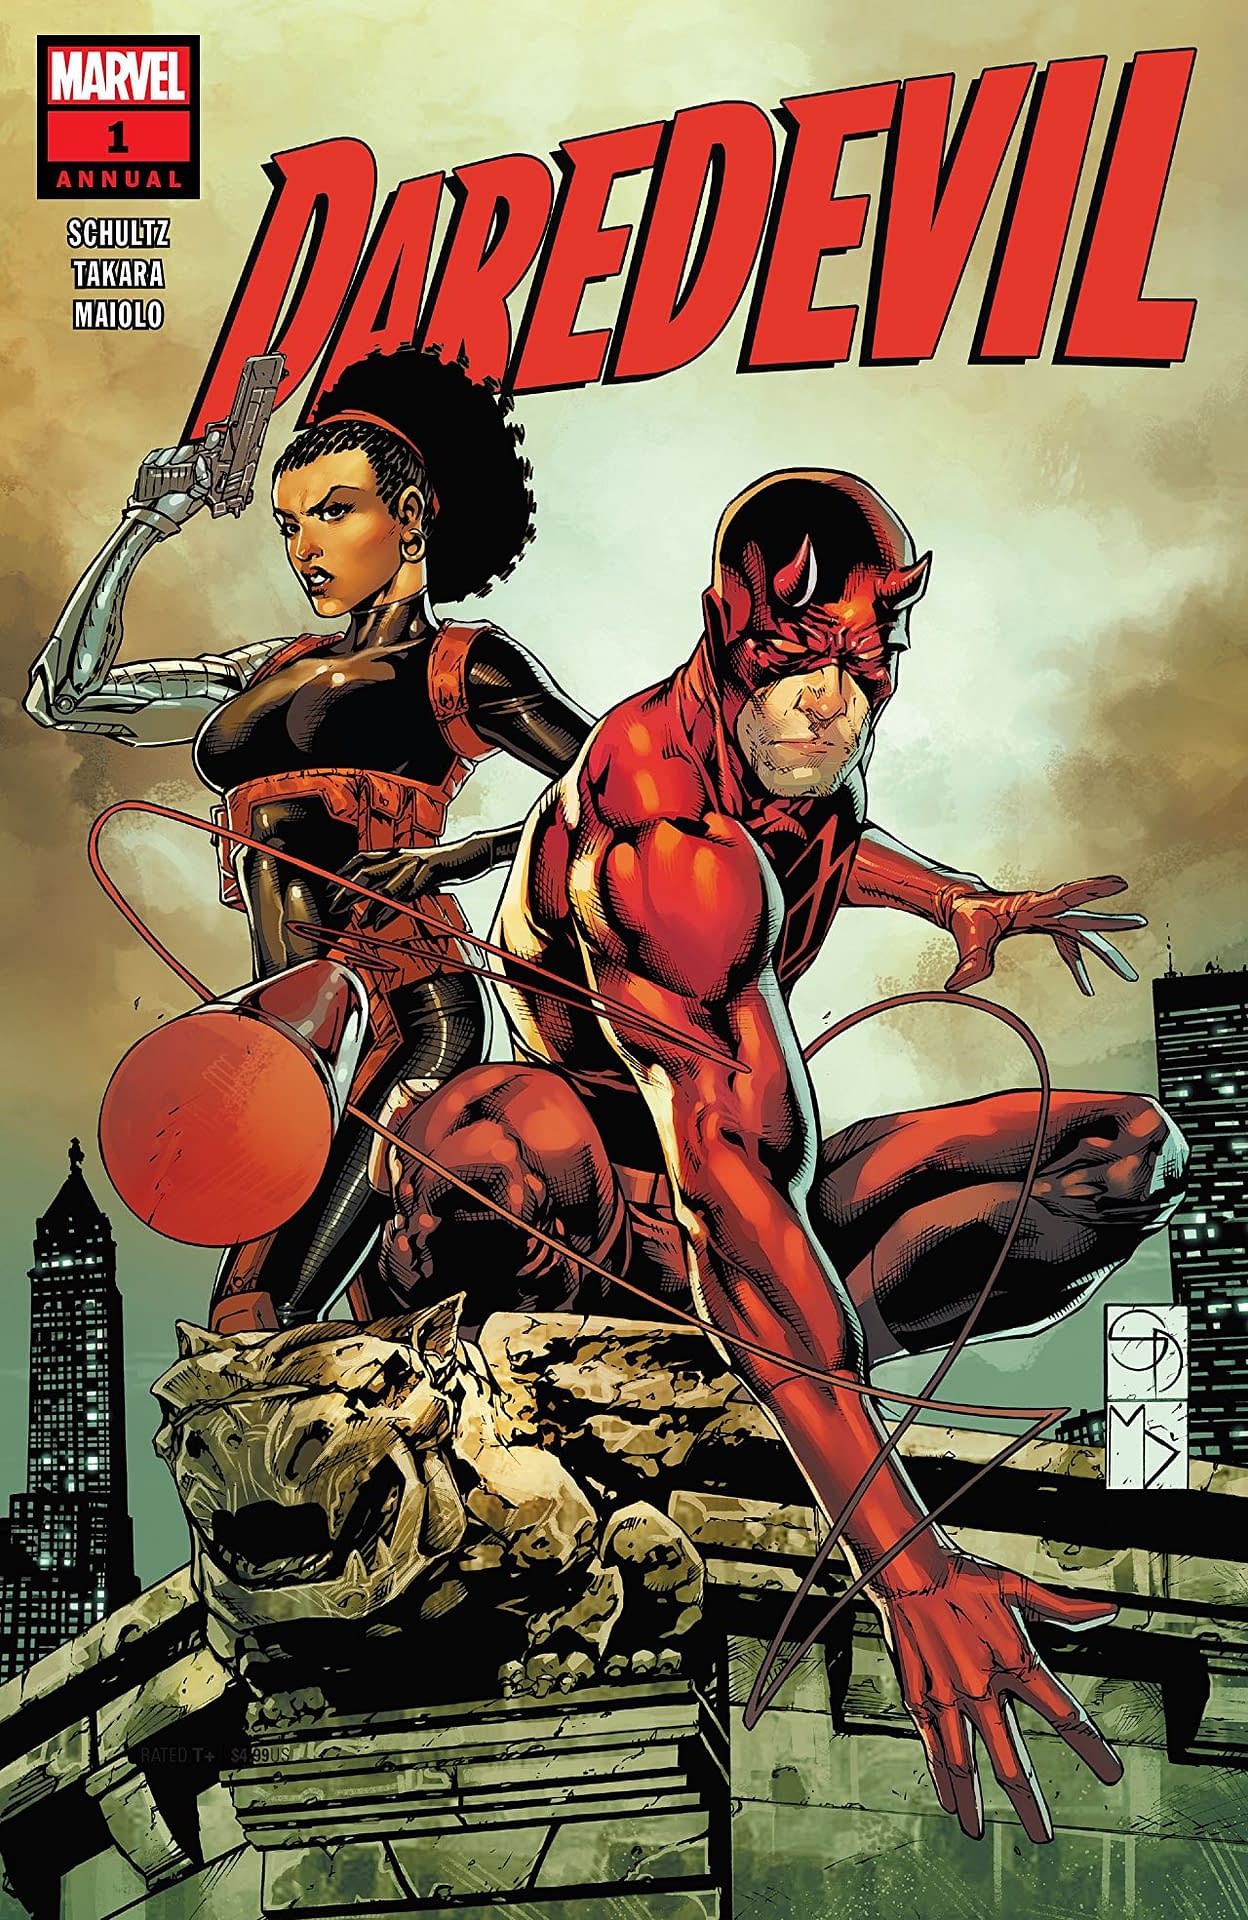 USA, 1989 Daredevil Annual # 4 Dr. Strange, Spiderman 